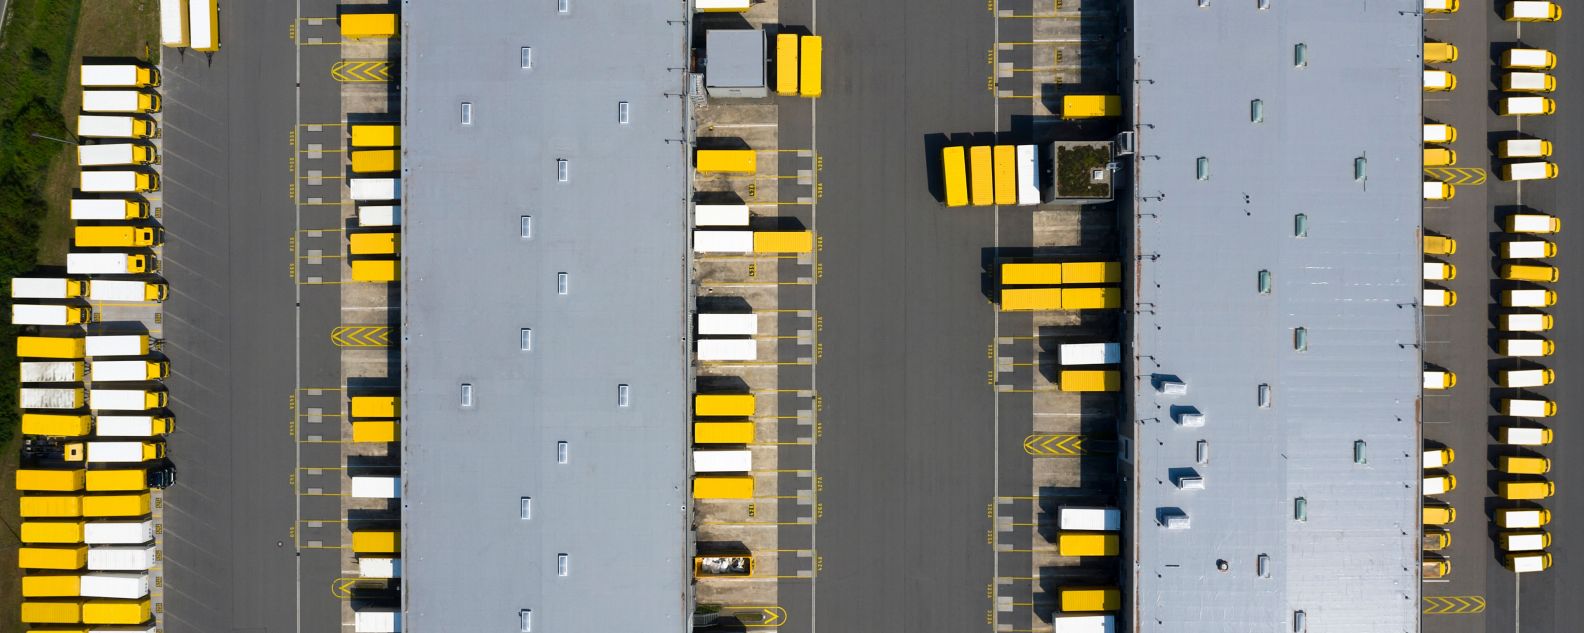 Vue aérienne de conteneurs de fret et d'un entrepôt de distribution